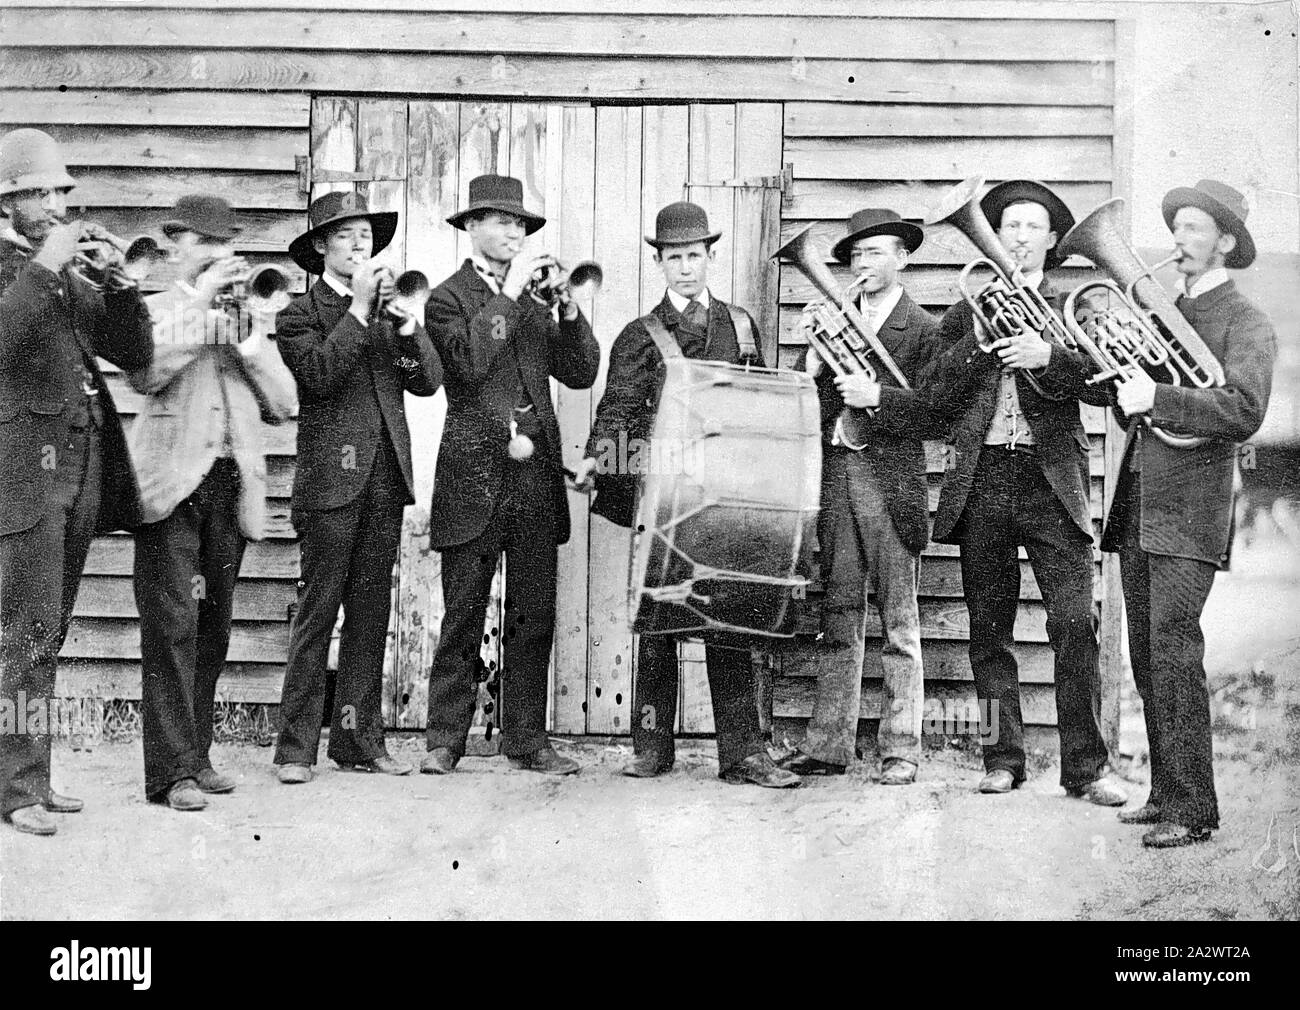 Negativo - Hopetoun, Victoria, antes de 1900, los miembros de la Hopetoun Brass Band de pie delante de sus salas. El hombre de la izquierda lleva un casco del policía Foto de stock